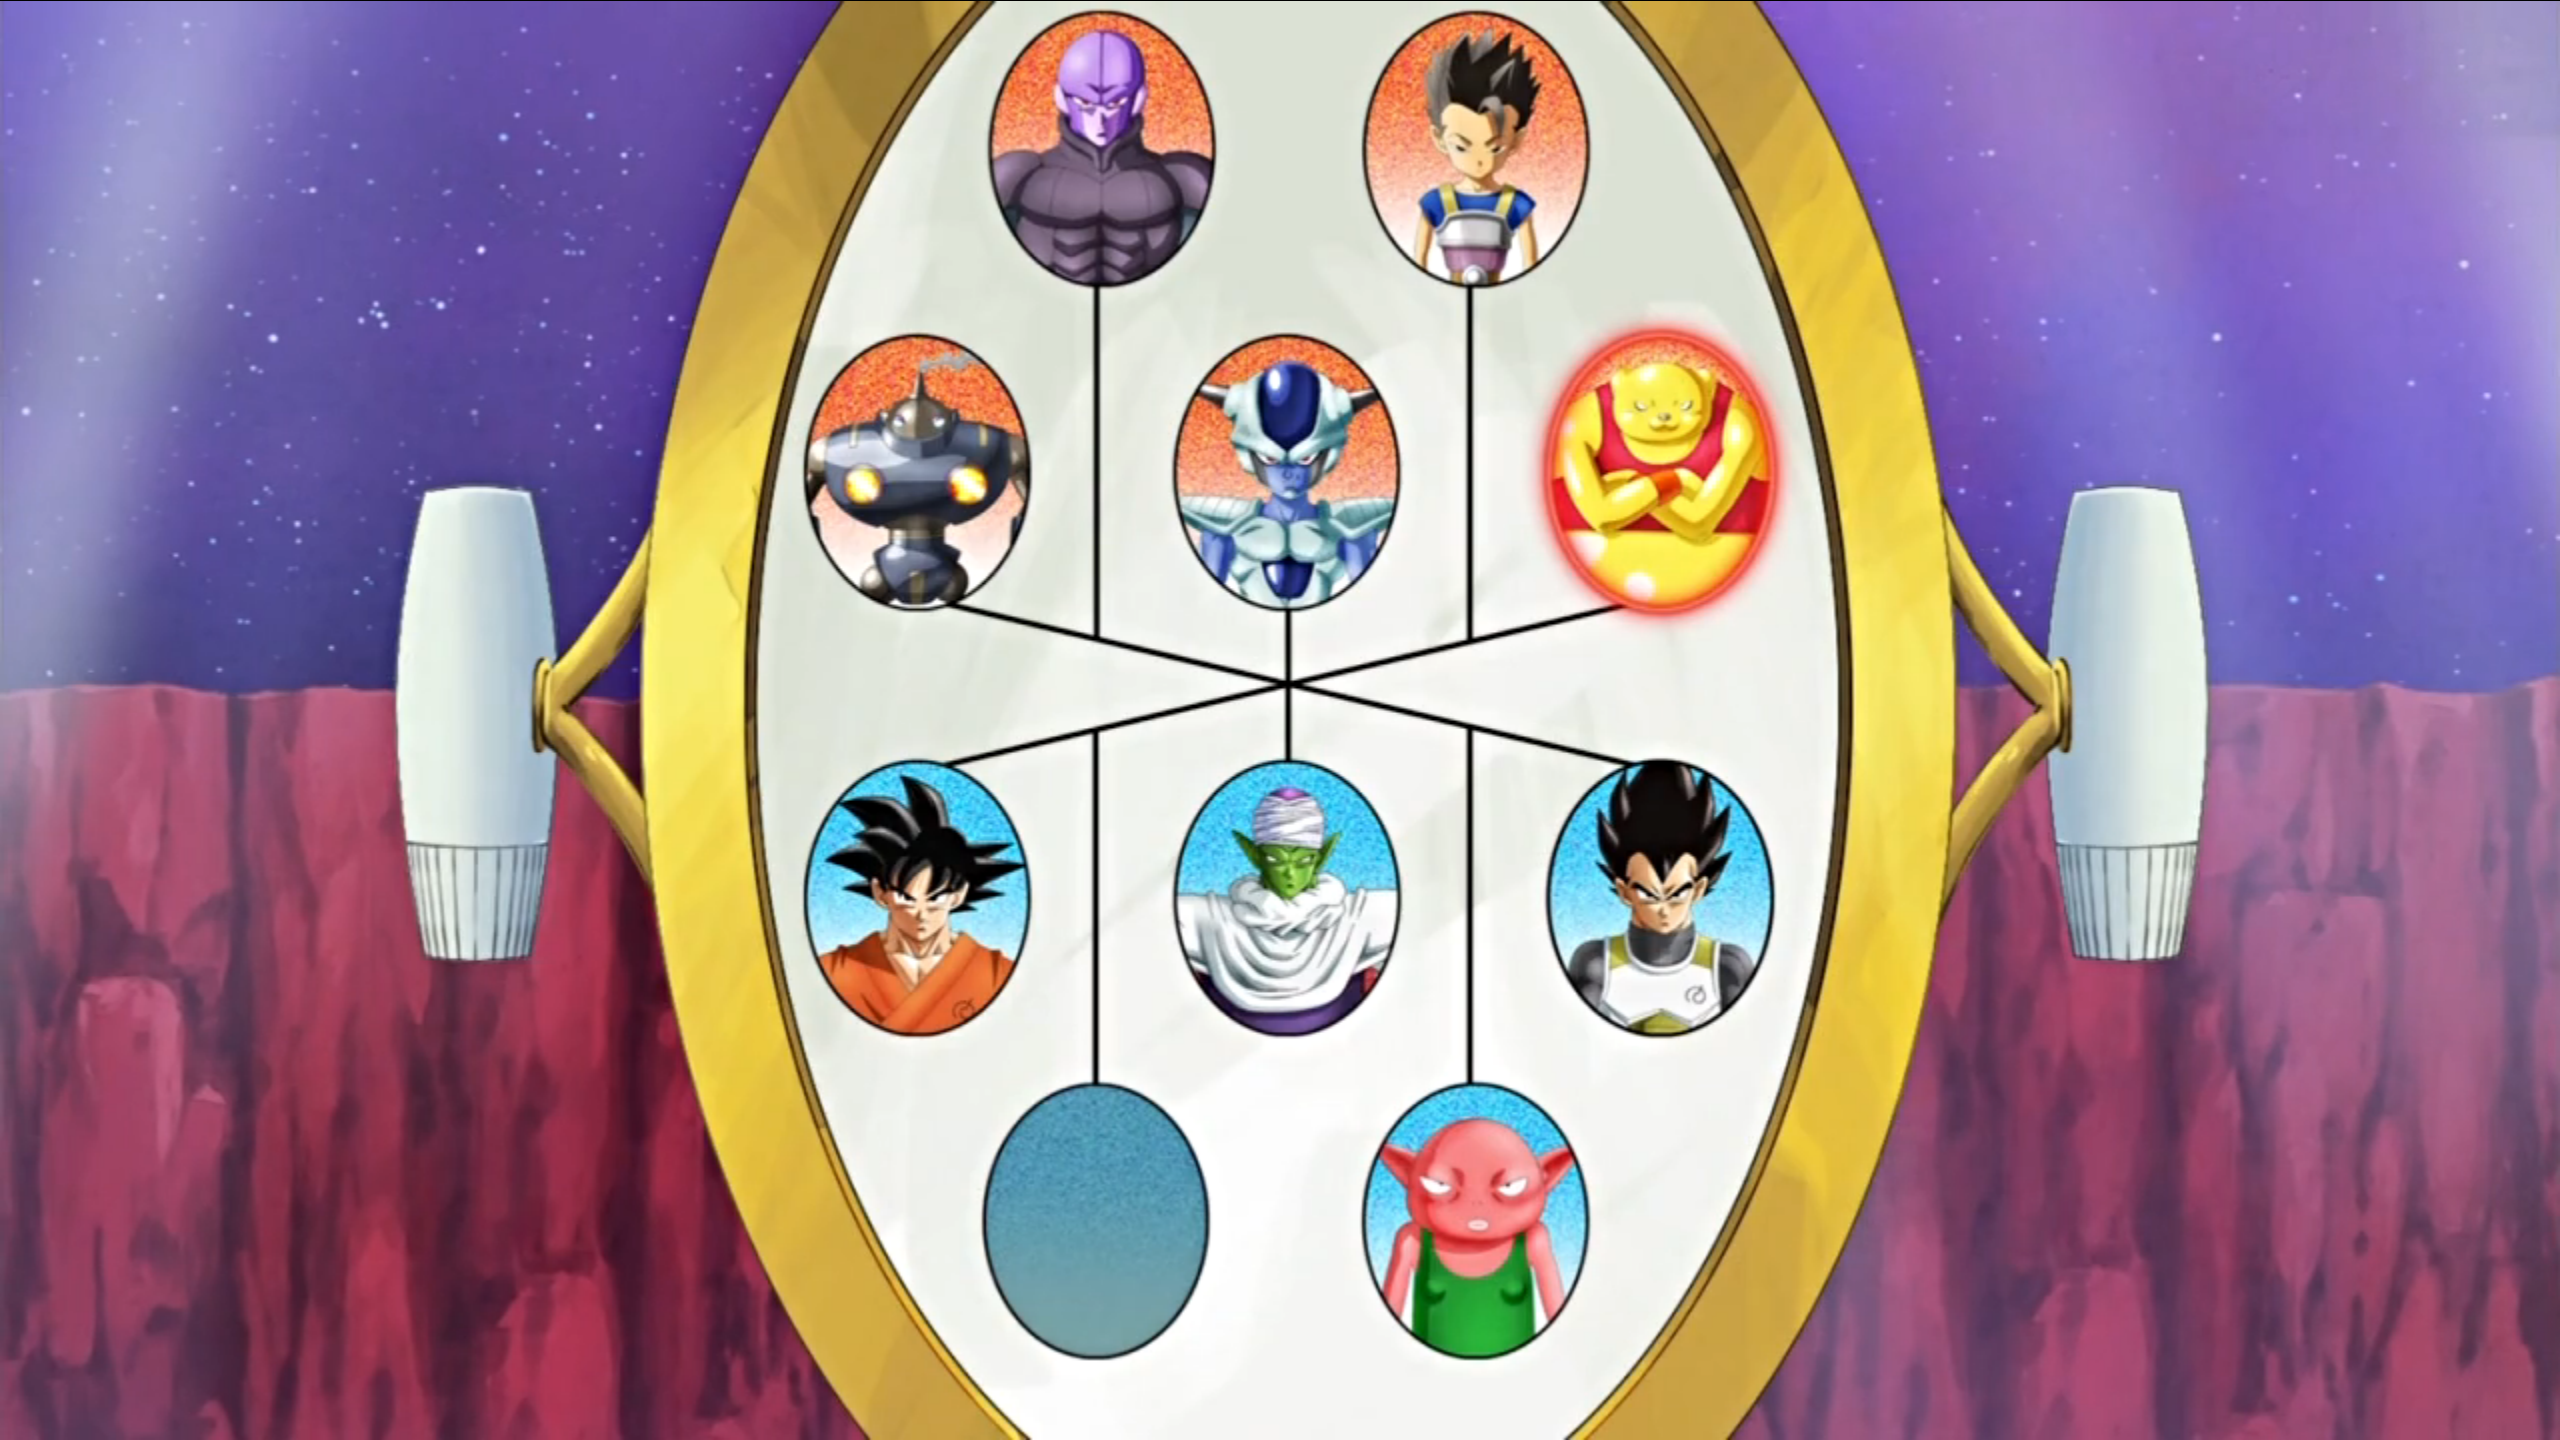 Dragon Ball Xenoverse 2 - Goku Multiverse Tournament 